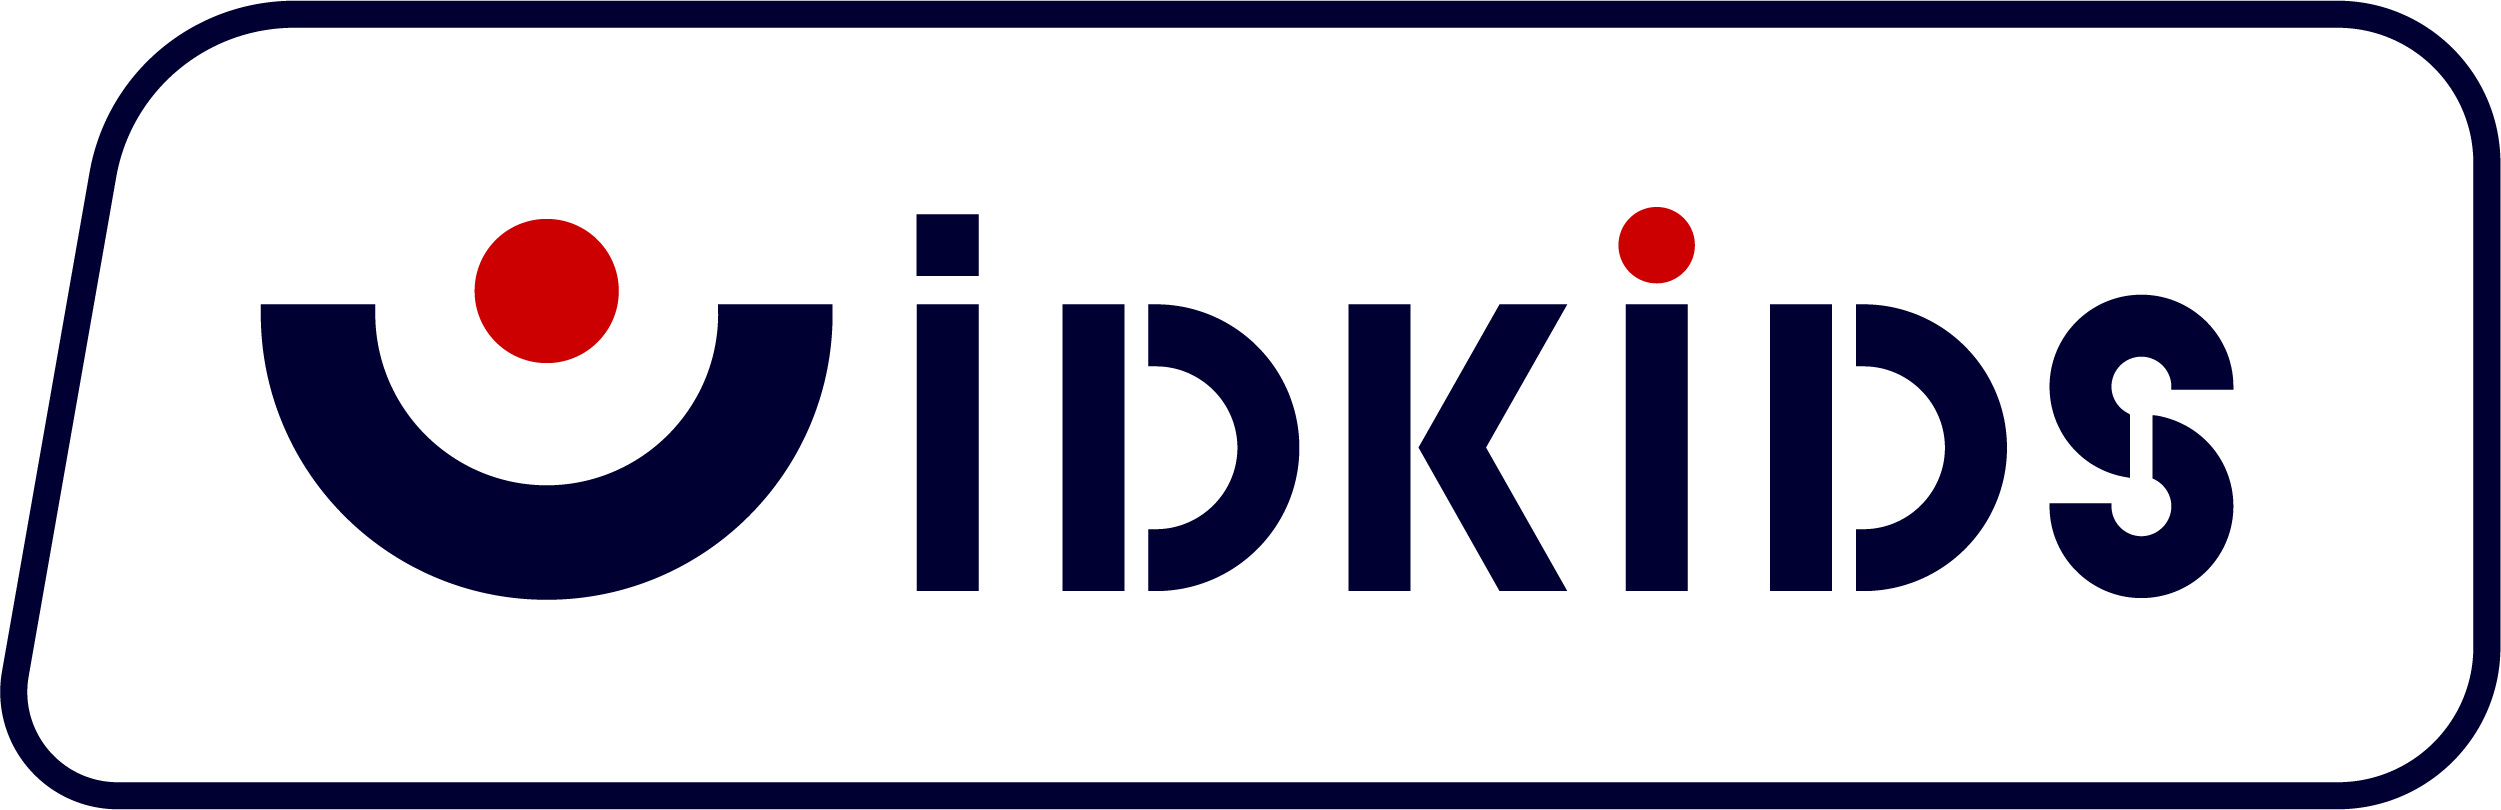 IDKIDS